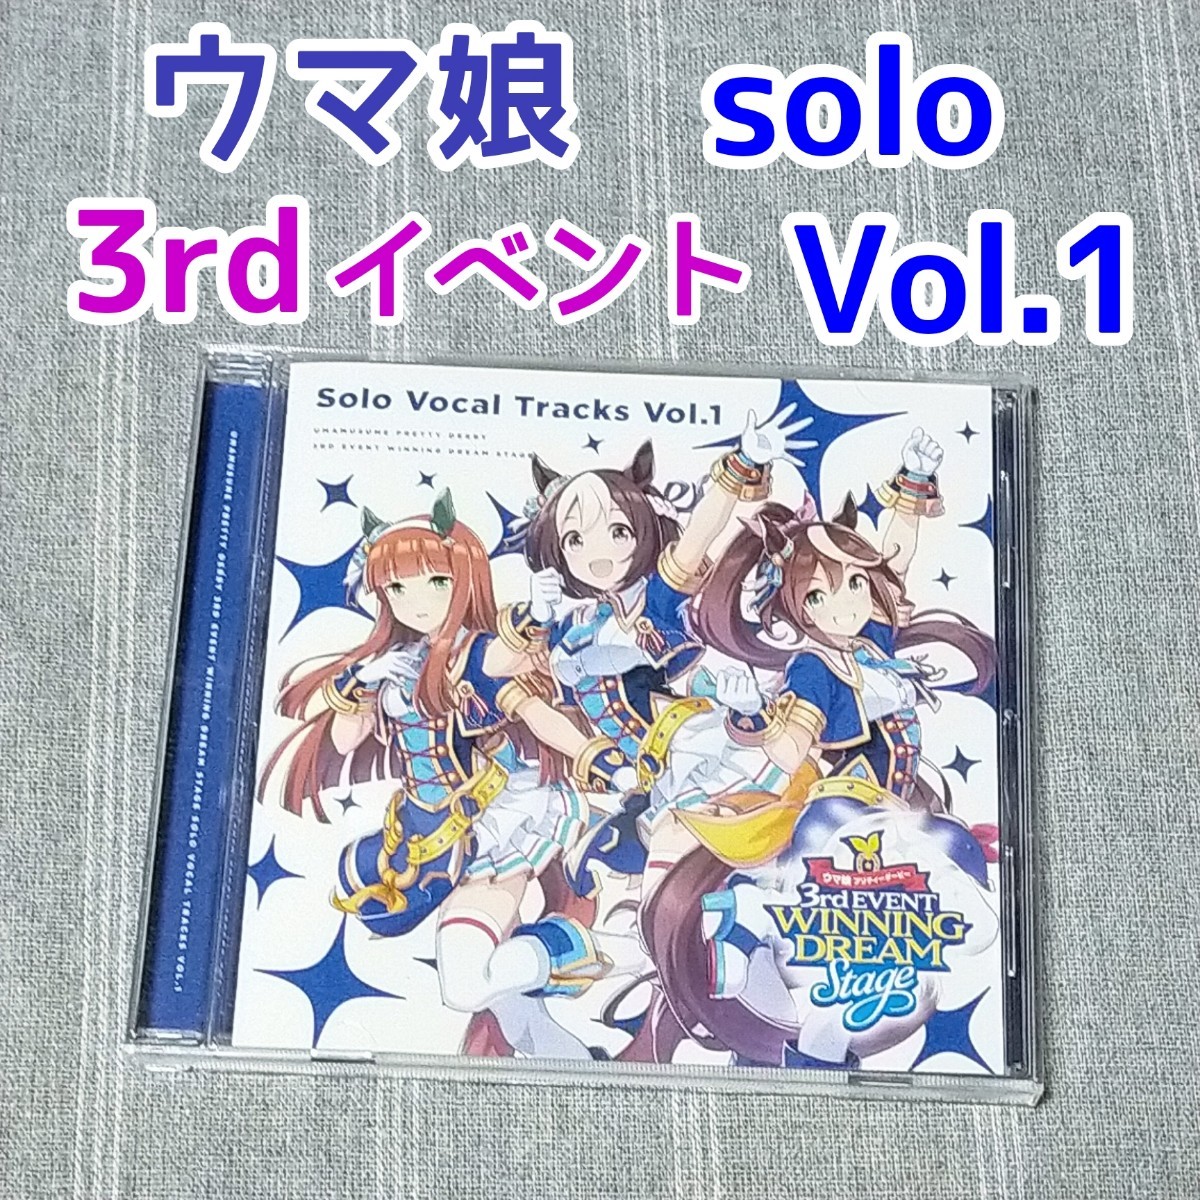 ウマ娘 Solo Vocal Tracks Vol.1 + Vol.2 3rd EVENT プリティーダービー★ソロ CD アルバム ゲーム音楽 WINNING LIVE 4th イベント ウマ箱2_画像2